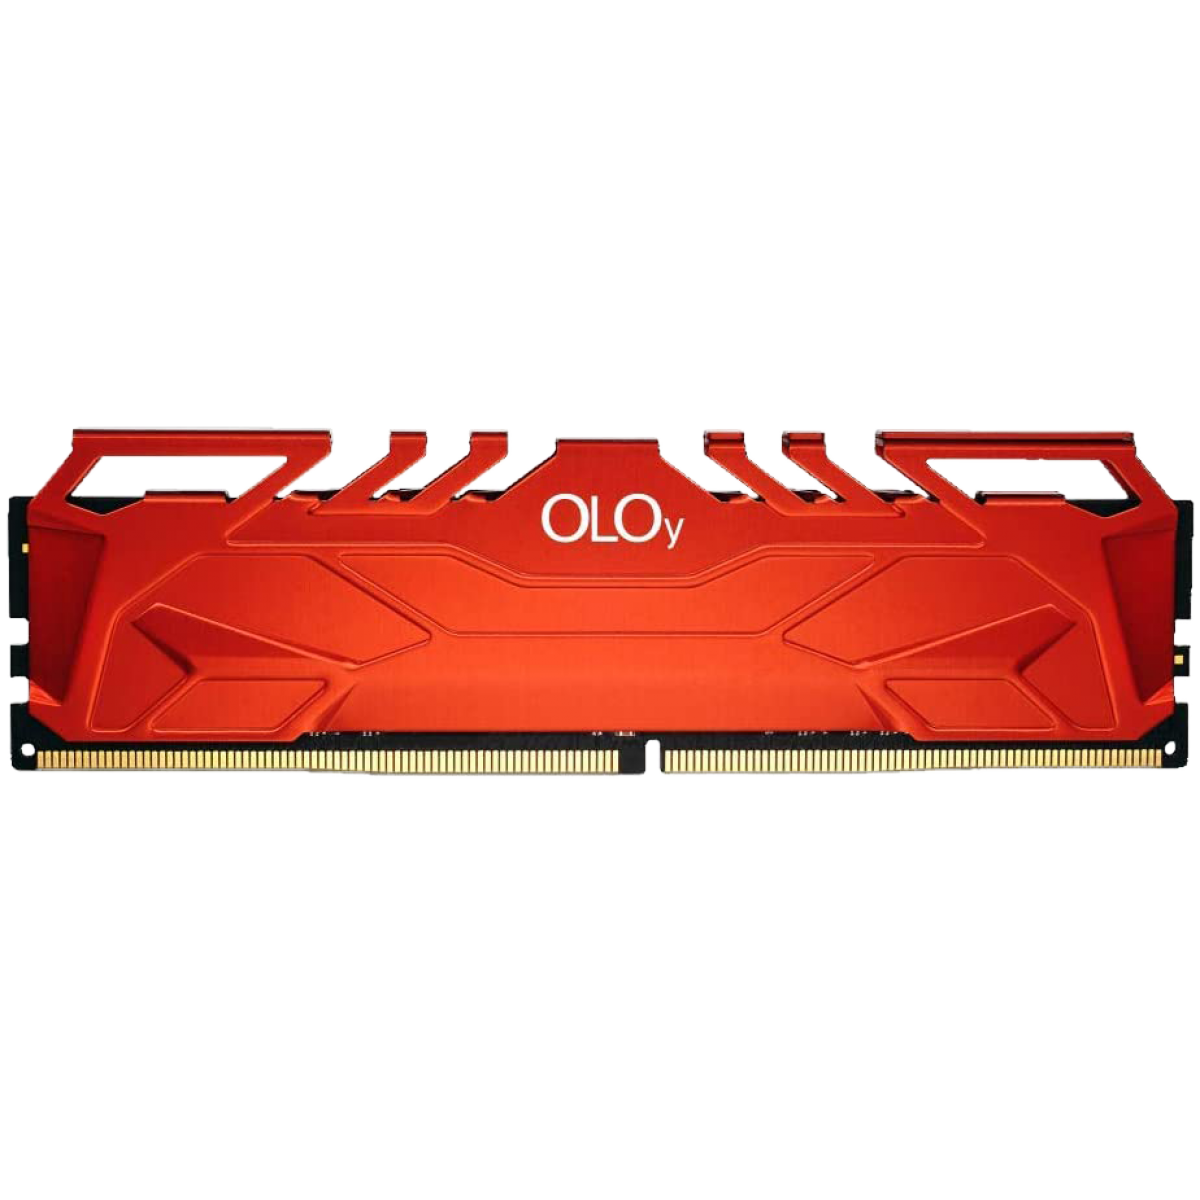 Memória DDR4 OLOy Owl Red, 16GB (2x8GB), 3000MHz, Red, MD4U083016BHDA